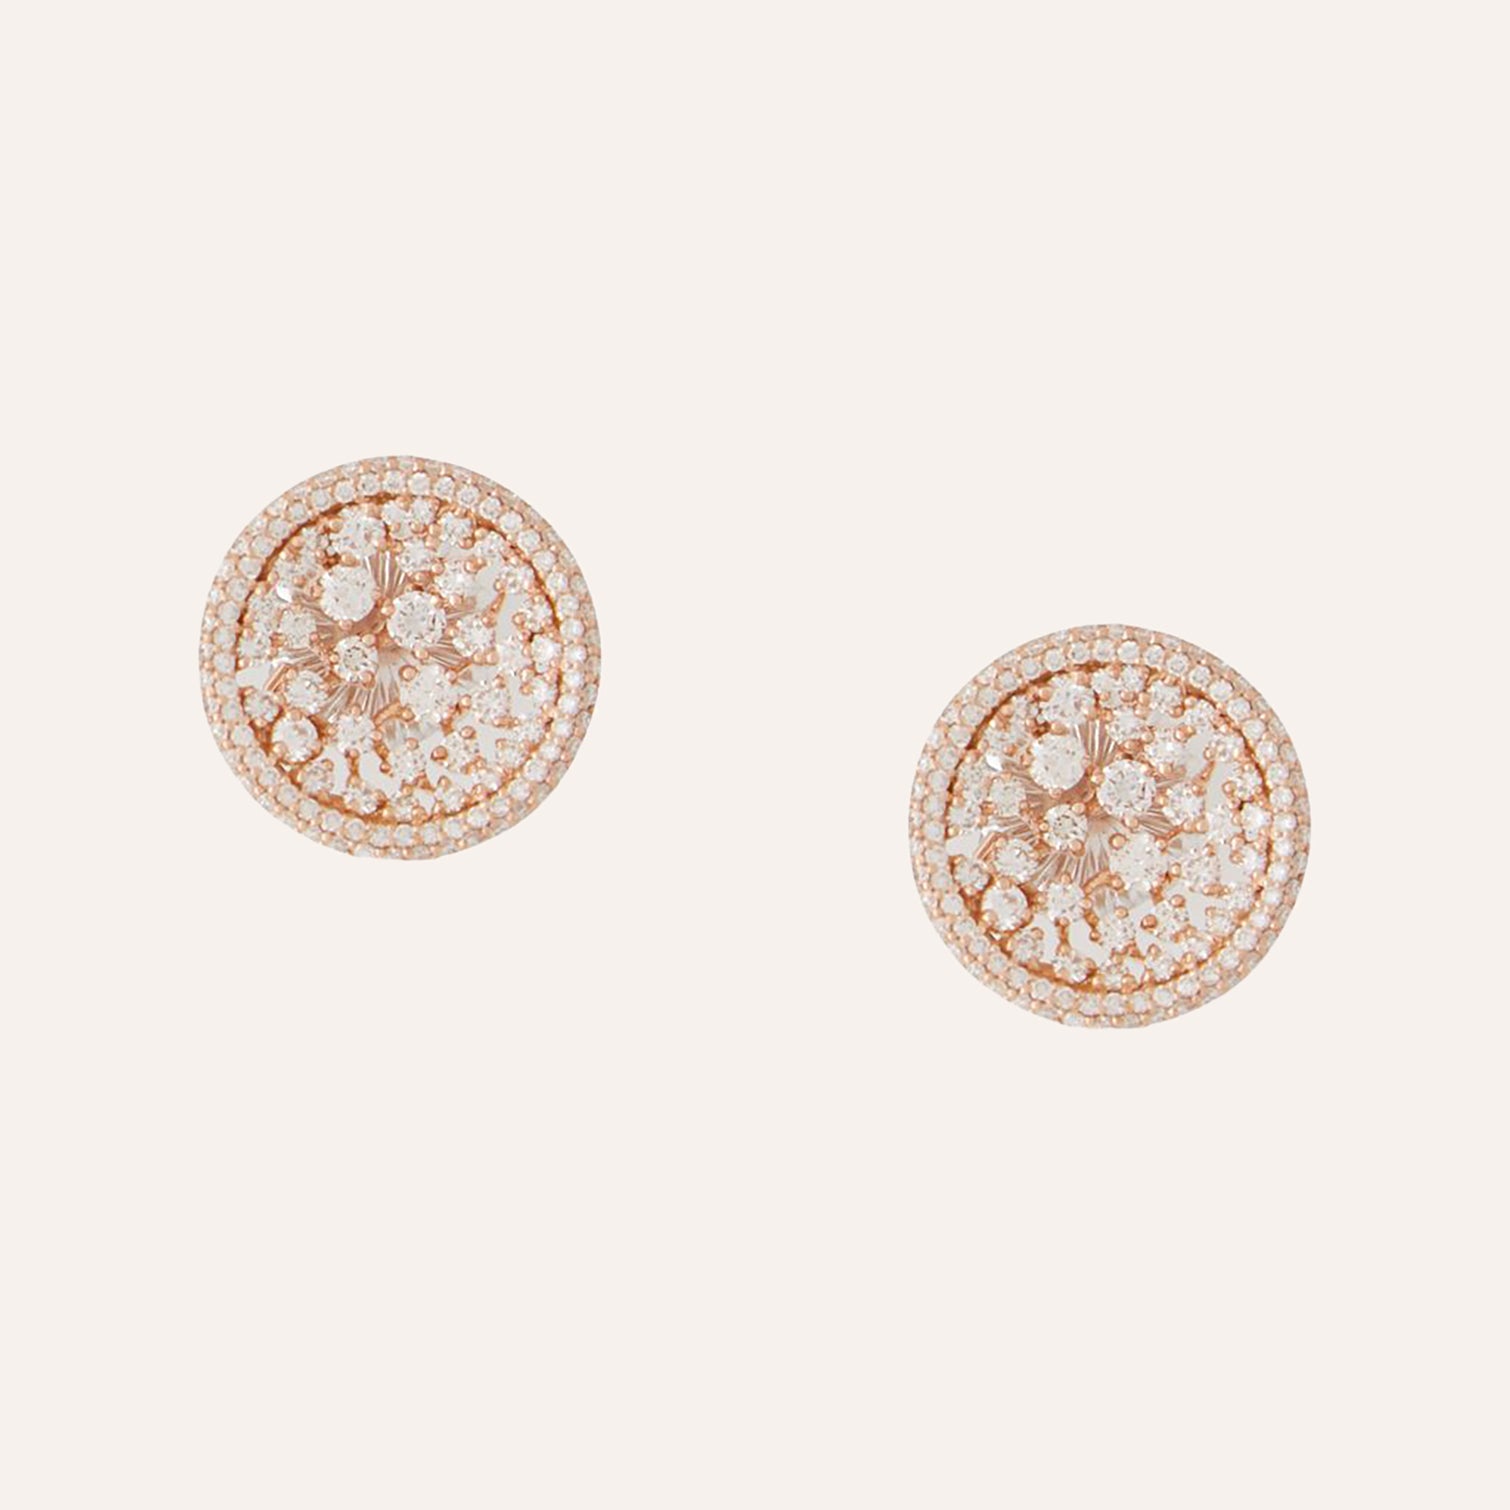 Celestial 18K Rose Gold & Diamond Earrings